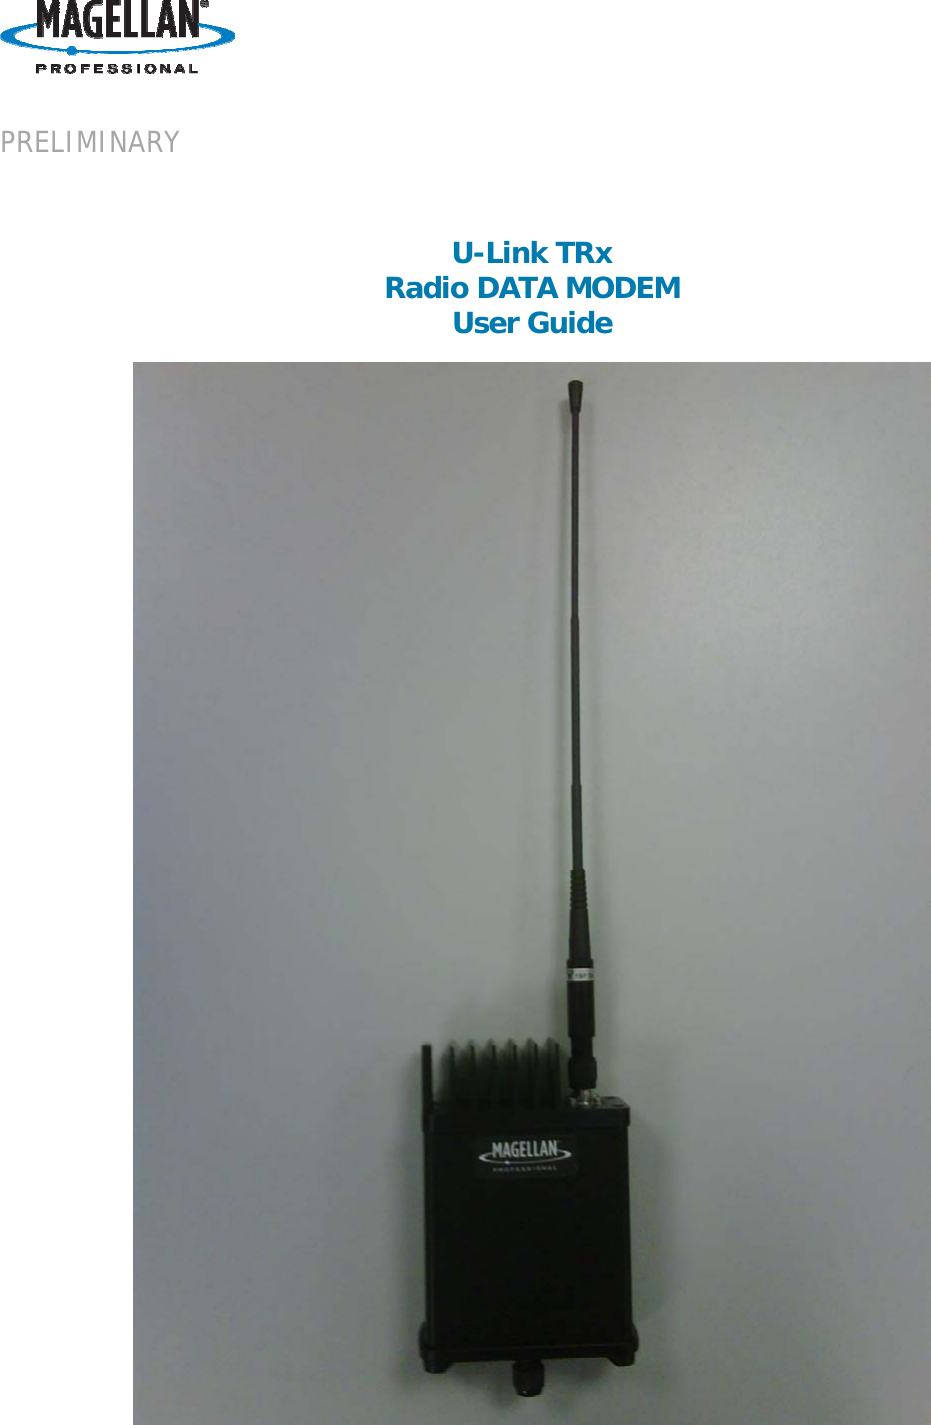       PRELIMINARY    U-Link TRx Radio DATA MODEM User Guide      